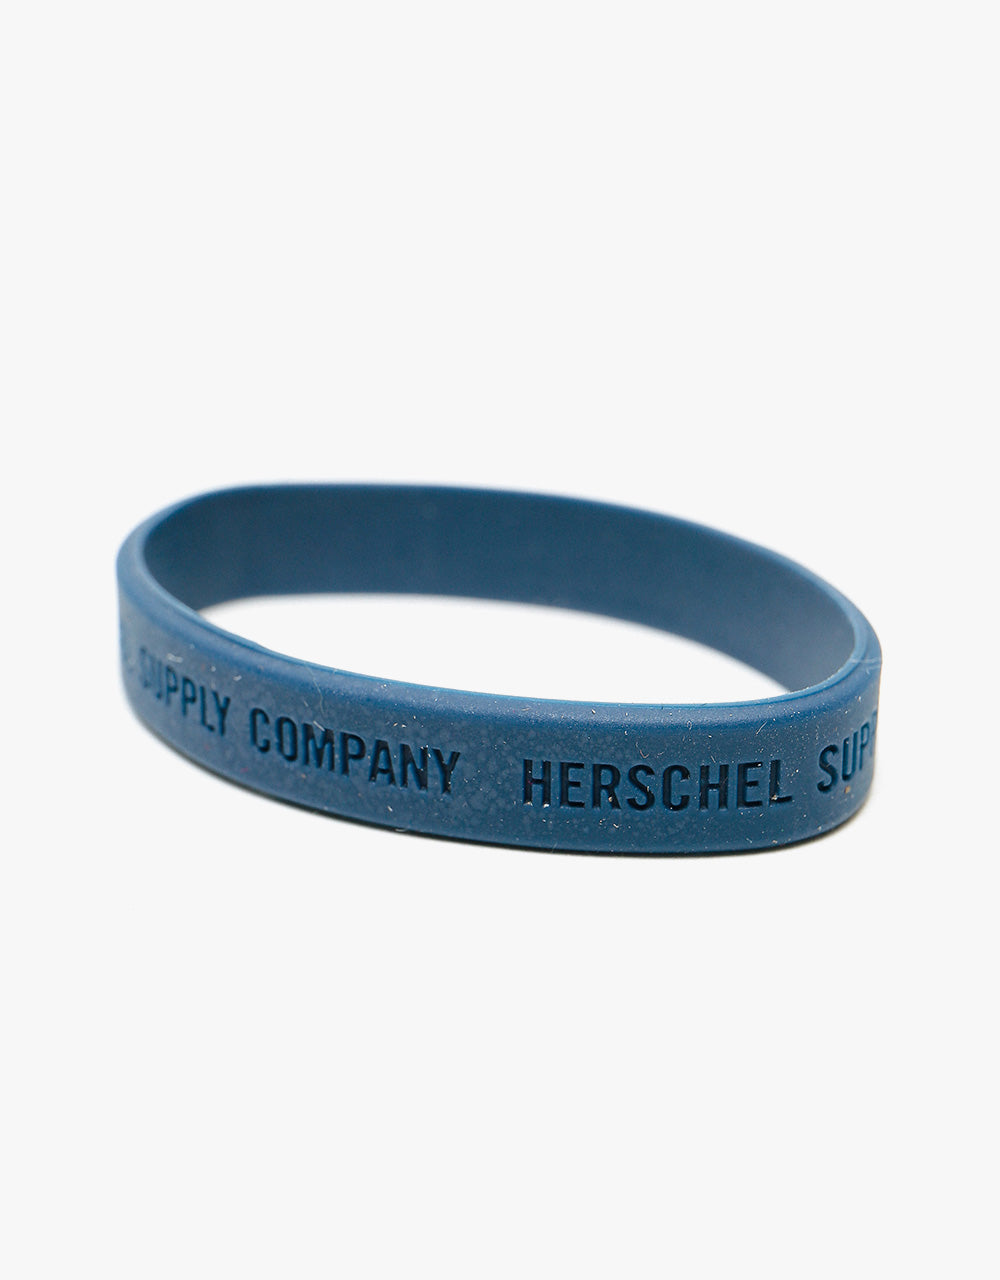 Herschel Supply Co. Charlie RFID Wallet - Scarab/Black/Saddle